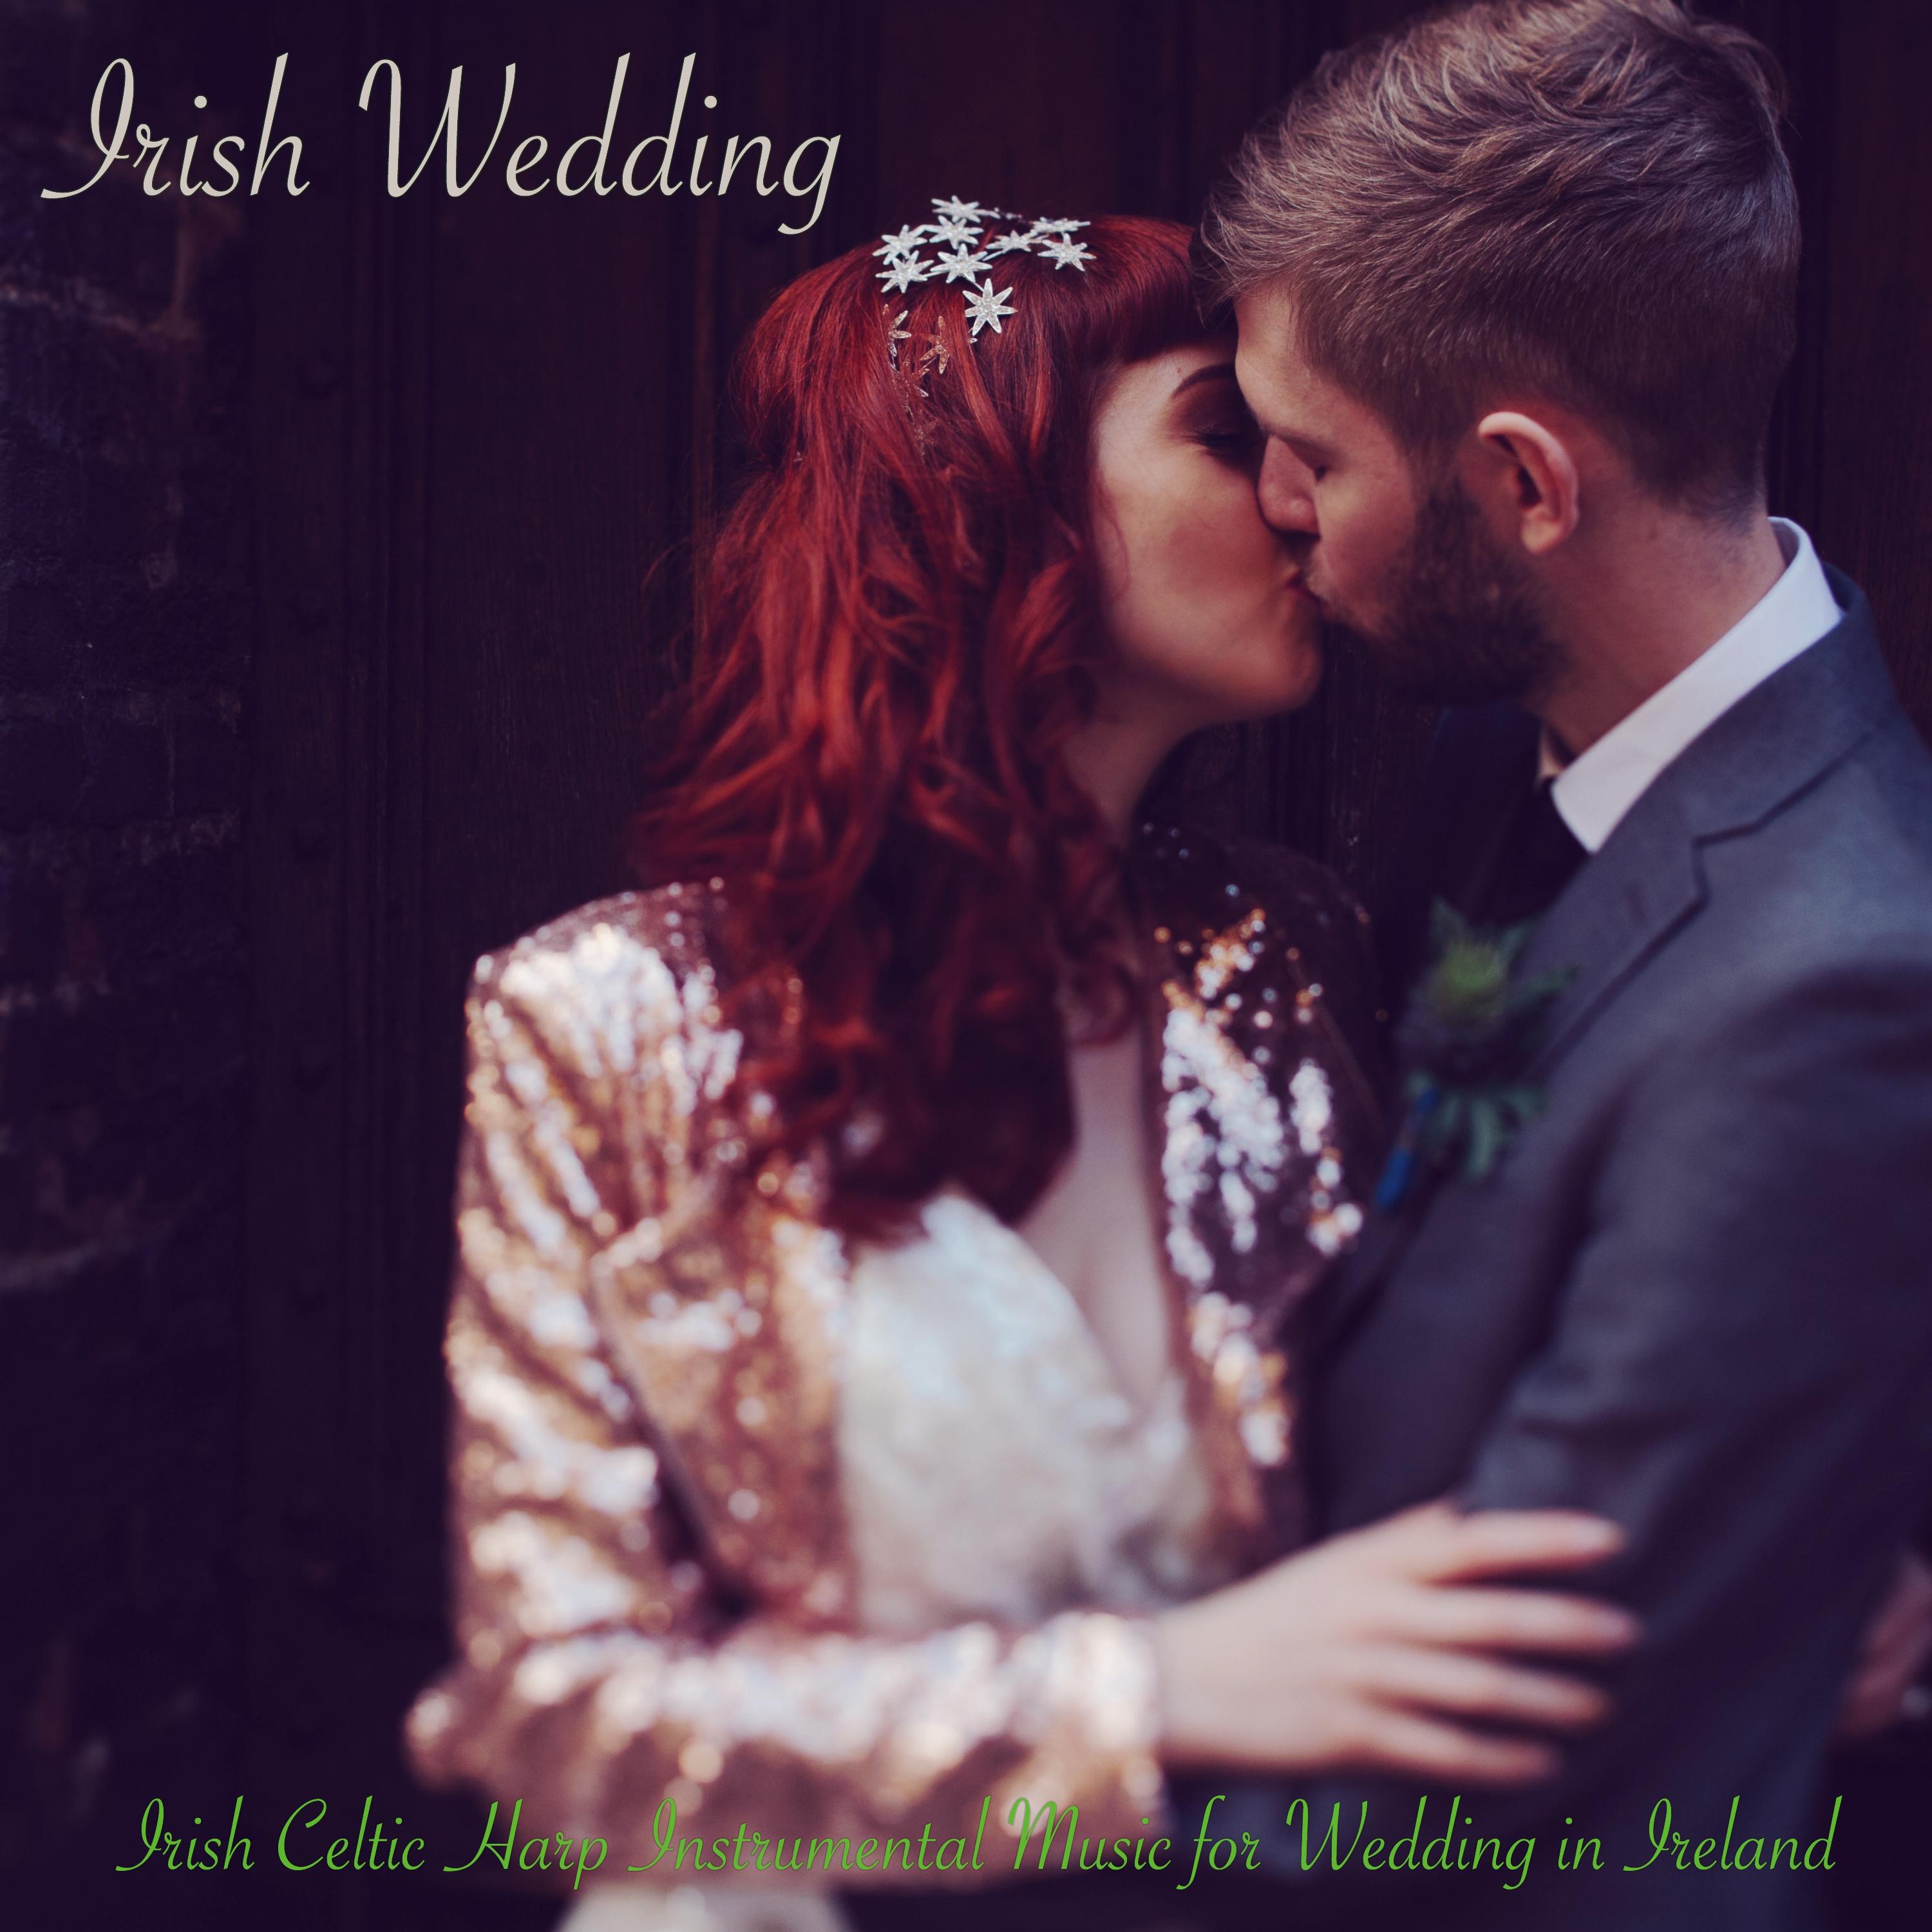 Ireland - Weddings